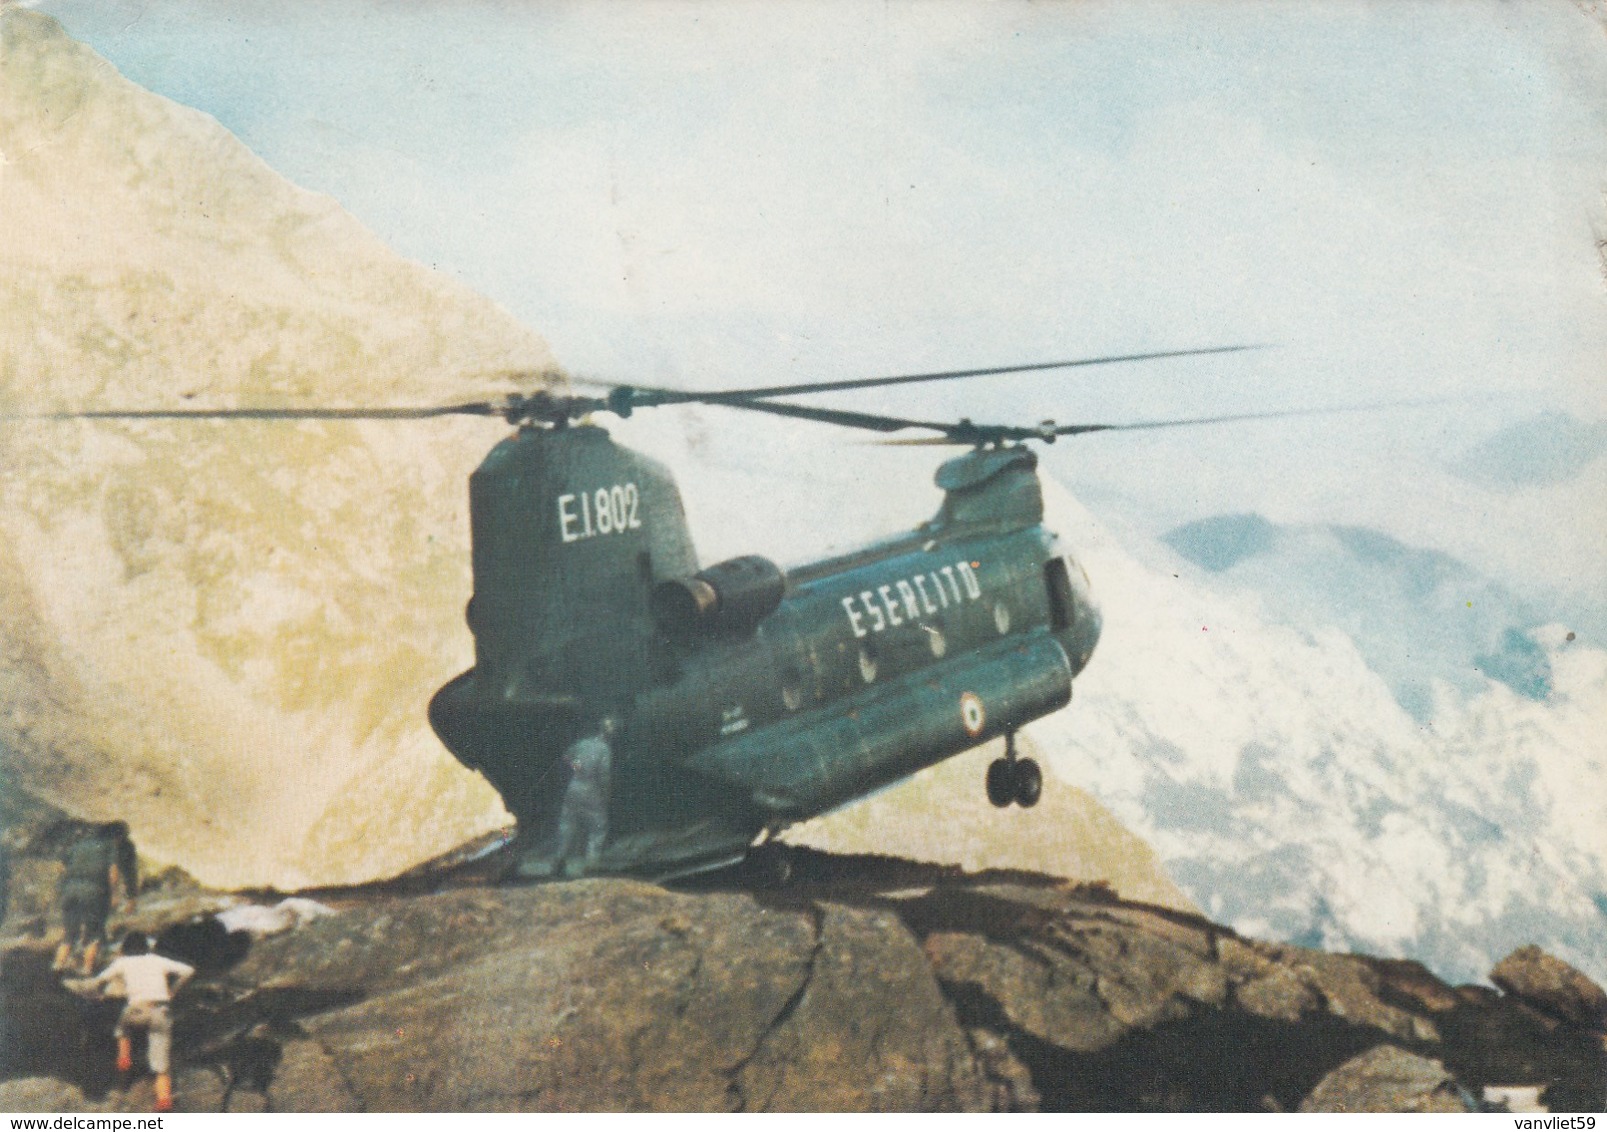 ELICOTTERO-HELICOPTER-HELICOPTERO-HUBSCHRAUBER-CH 47 C-CARTOLINA VERA FOTO VIAGGIATA IL 191-1979 - Elicotteri